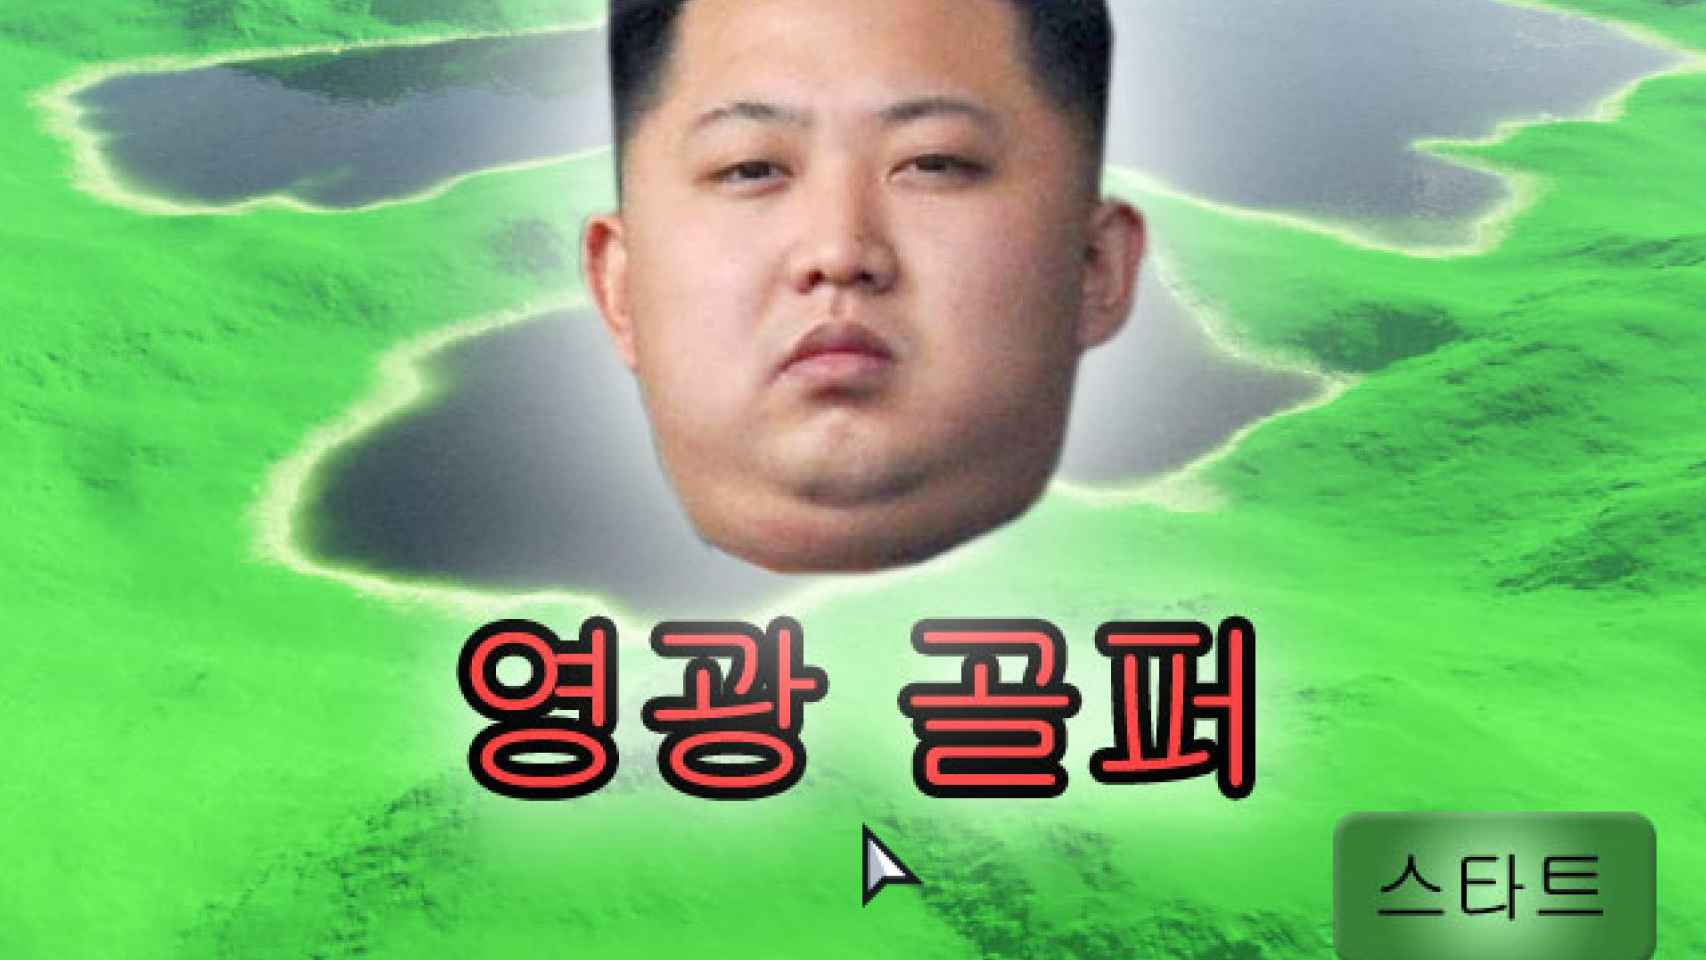 Imagen del vídeojuego de Golf de Kim Jong Un